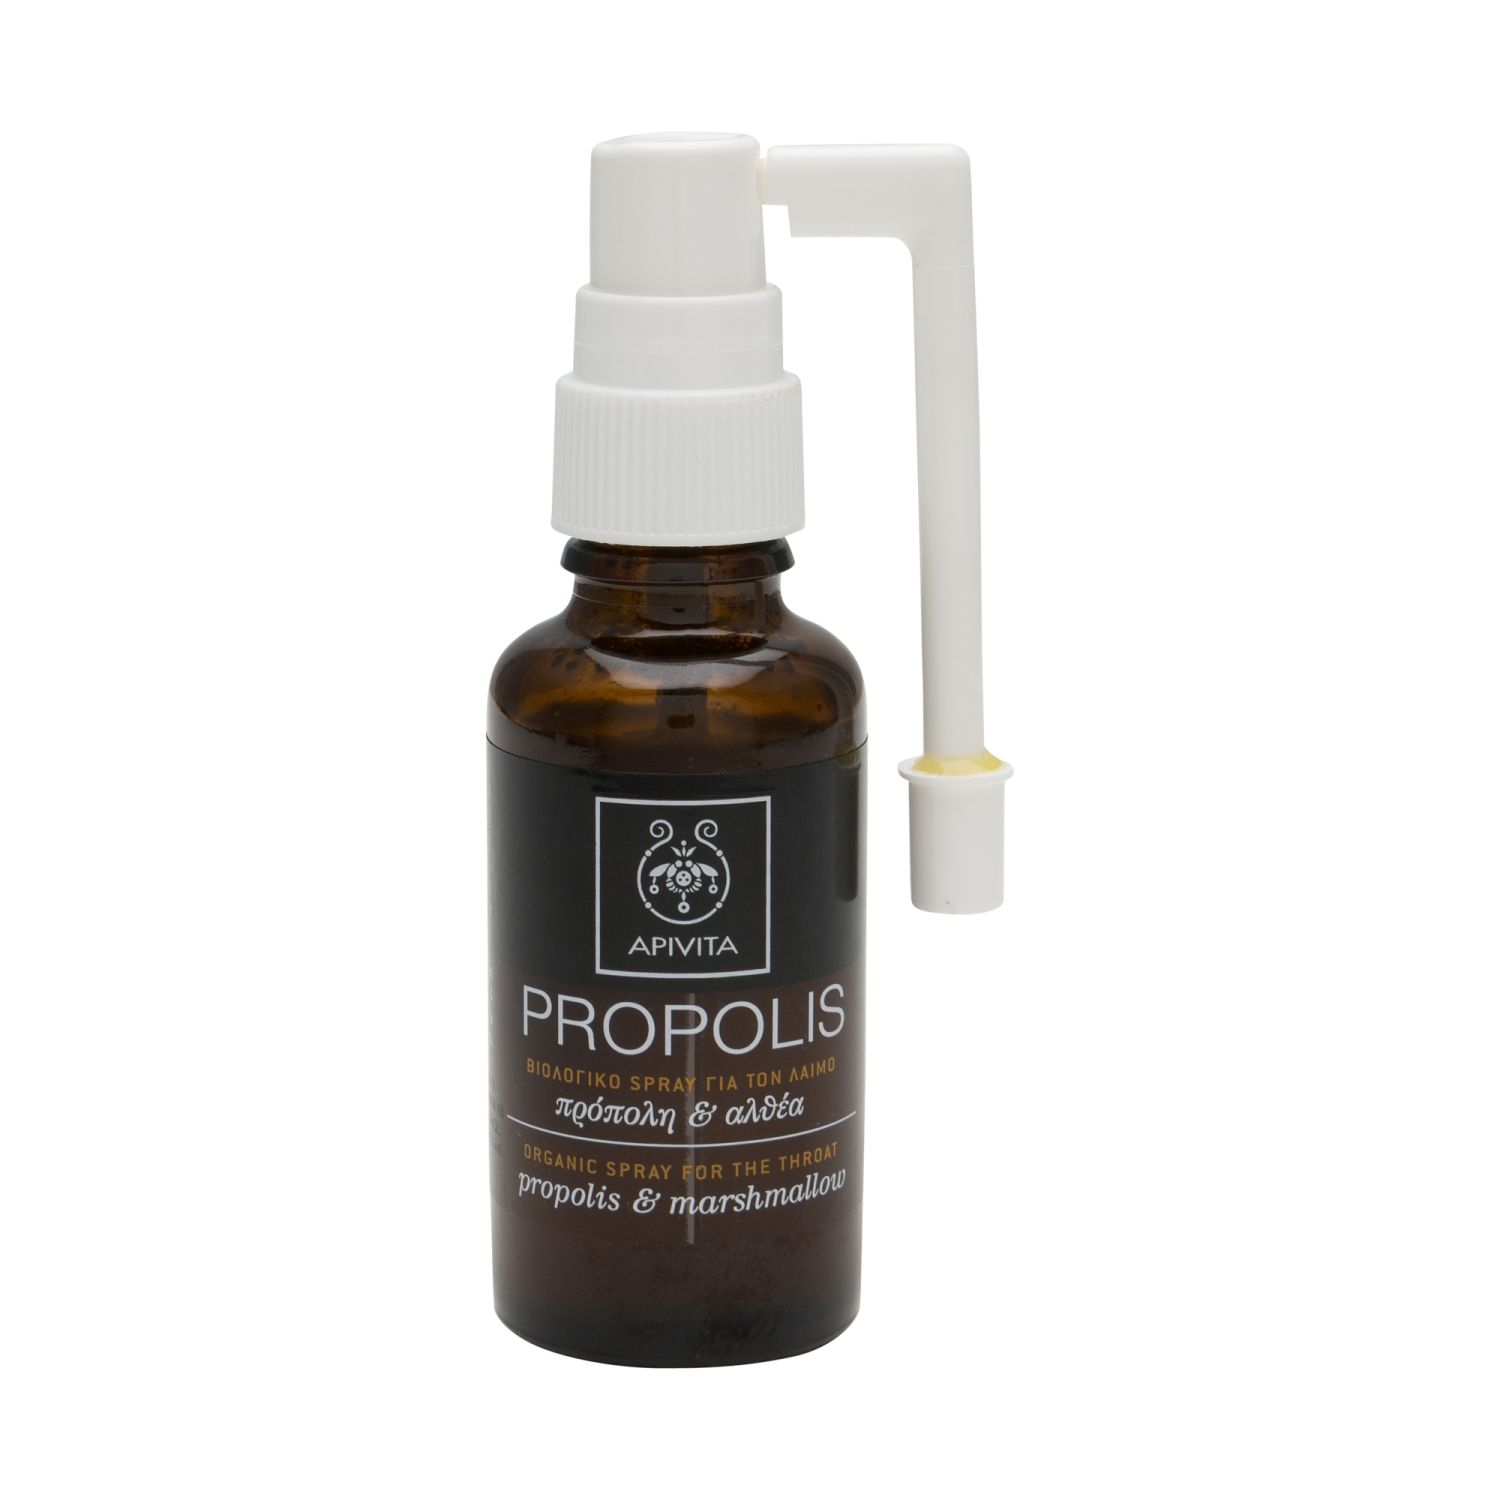 Apivita Propolis Solución Organica De Propóleo rico en ingredientes activos, incluyendo flavonoides y aceites esenciales que tiene propiedades antioxidantes, curativas, antimicrobianas, antibióticas, anti fúngicas, antivirales